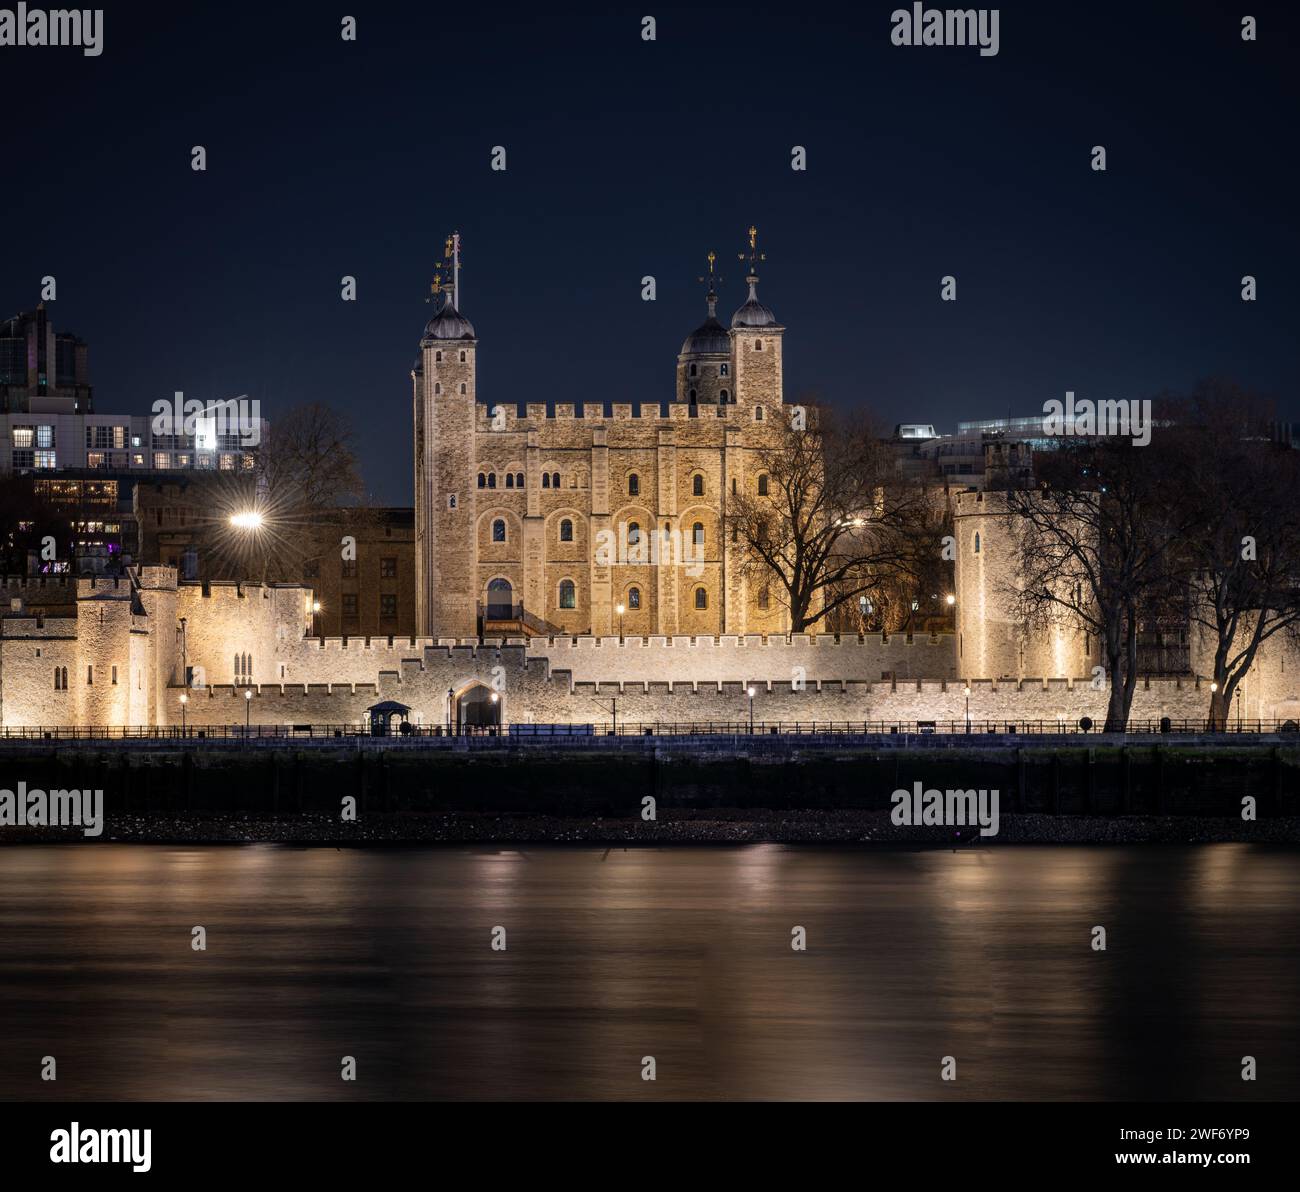 Der Tower of London bei Nacht mit Lichtreflexen auf der Themse. Nachtaufnahmen mit langer Belichtung. Stockfoto